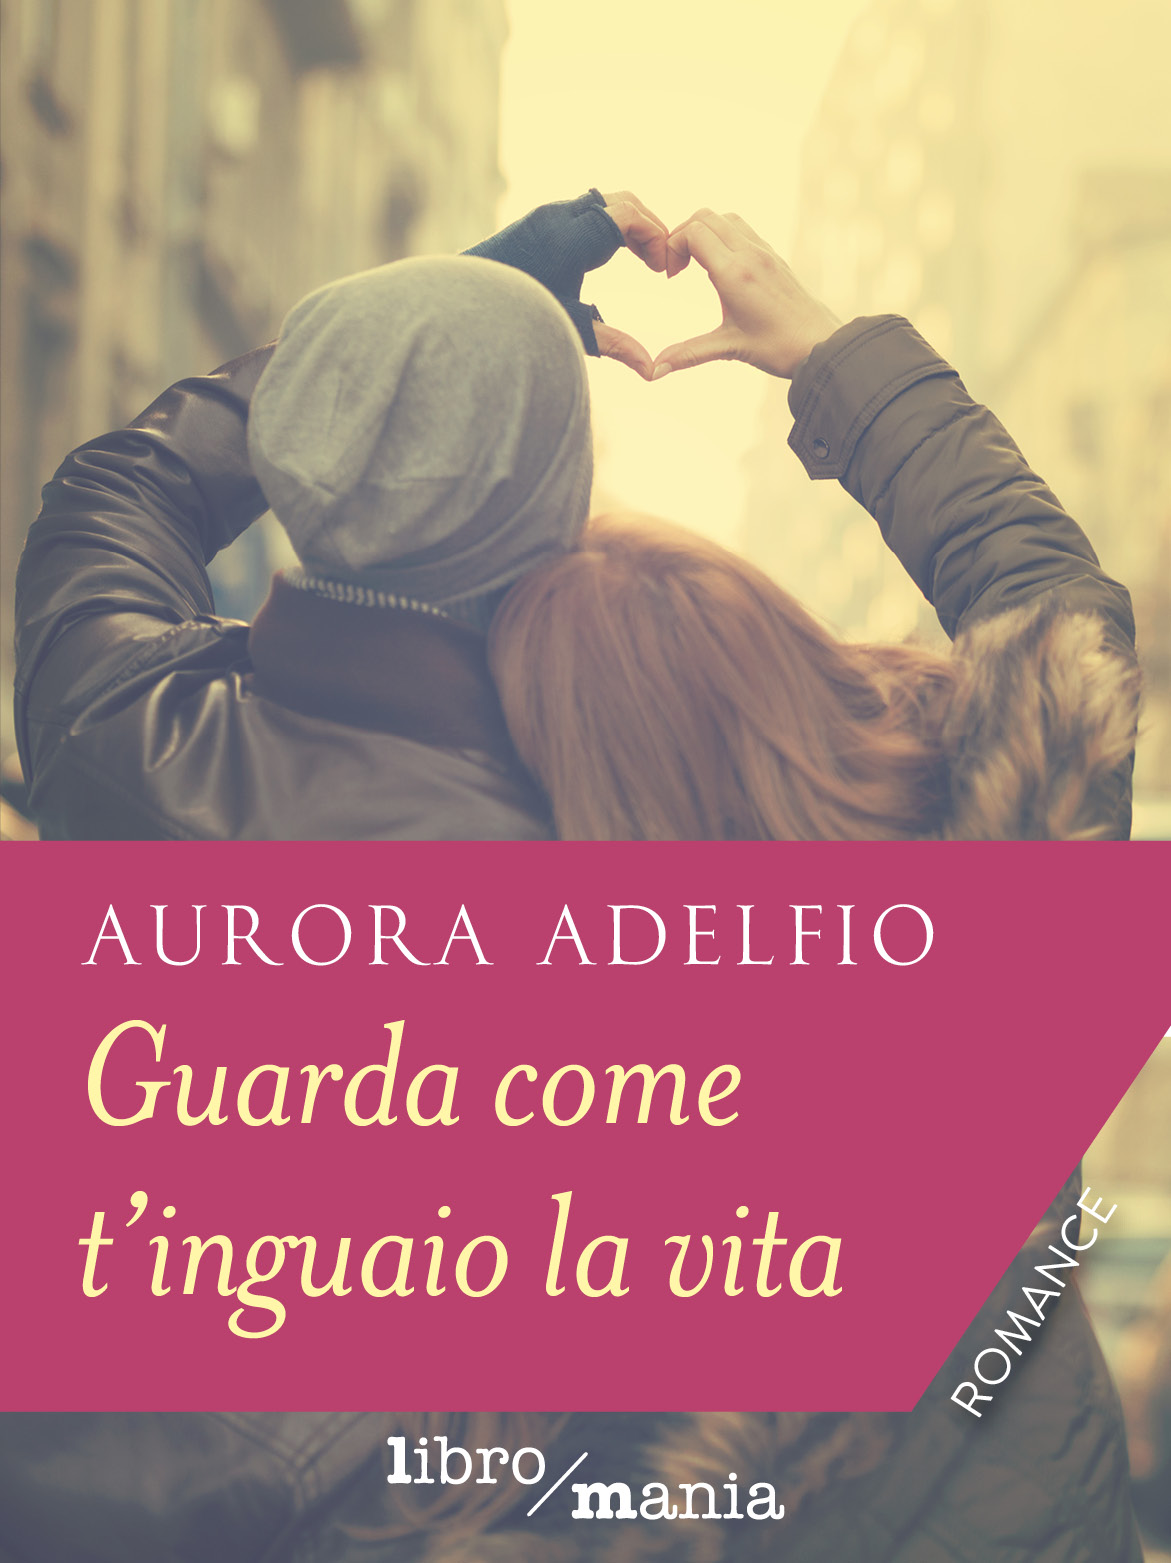 Guarda come t'inguaio la vita di Aurora Adelfio (non disponibile), Libri